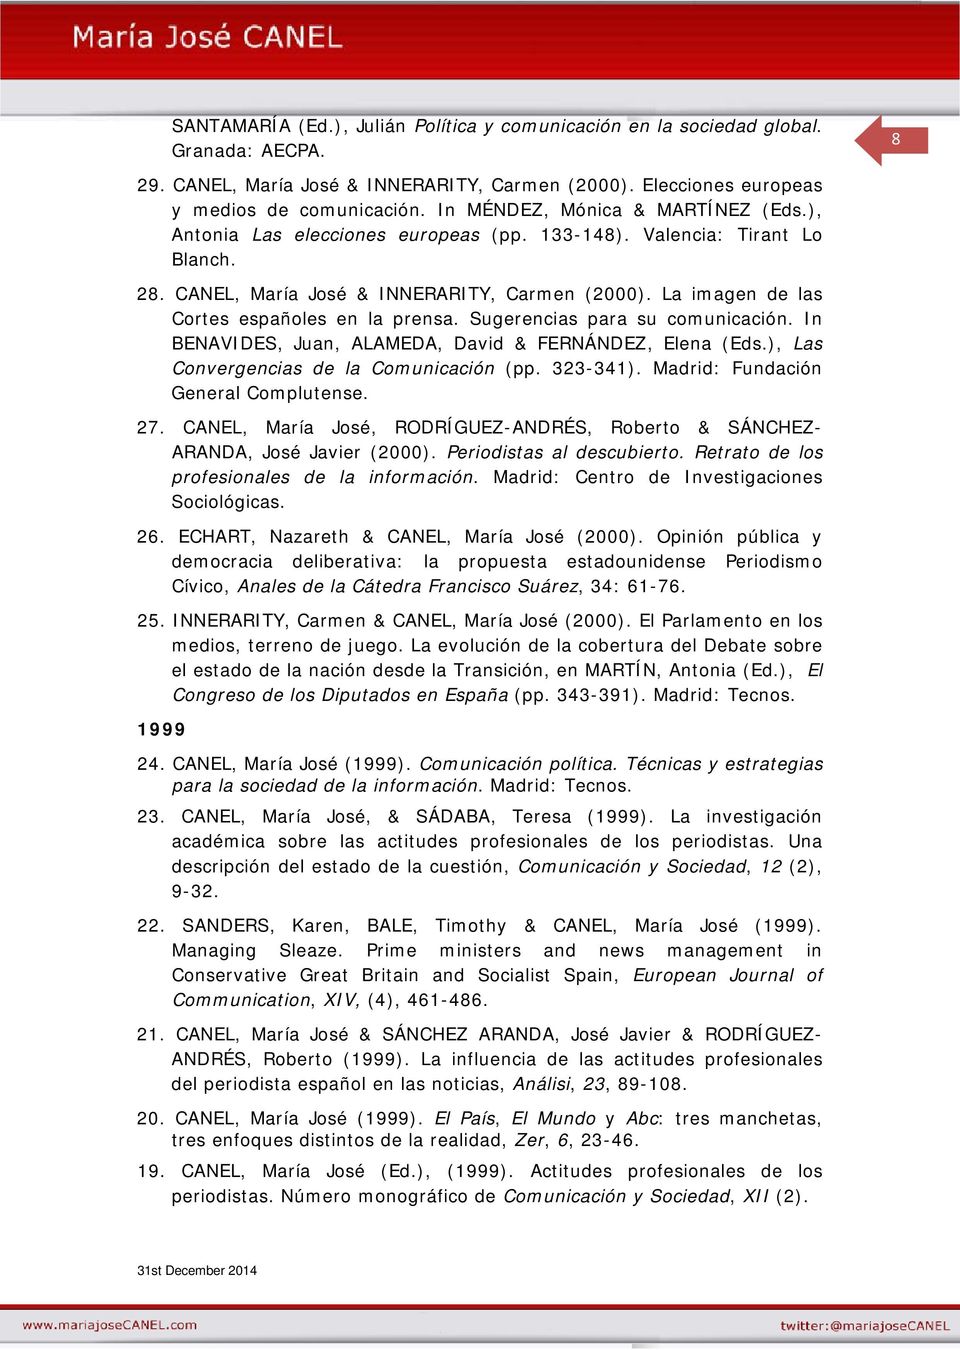 La imagen de las Cortes españoles en la prensa. Sugerencias para su comunicación. In BENAVIDES, Juan, ALAMEDA, David & FERNÁNDEZ, Elena (Eds.), Las Convergencias de la Comunicación (pp. 323-341).